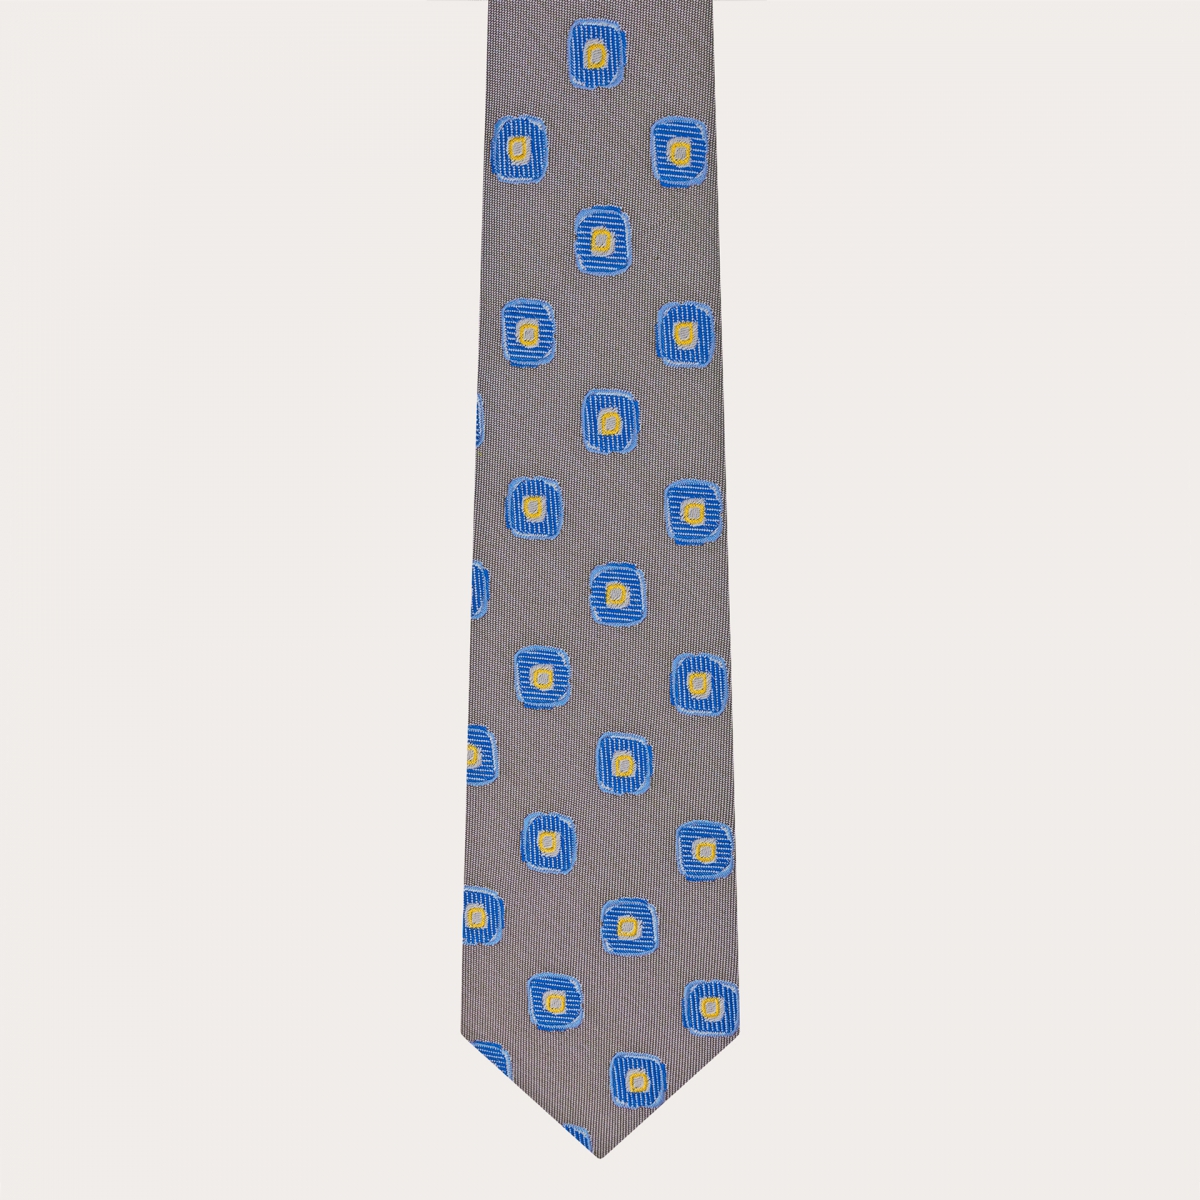 Cravate homme en soie jacquard, taupe à motif géométrique bleu